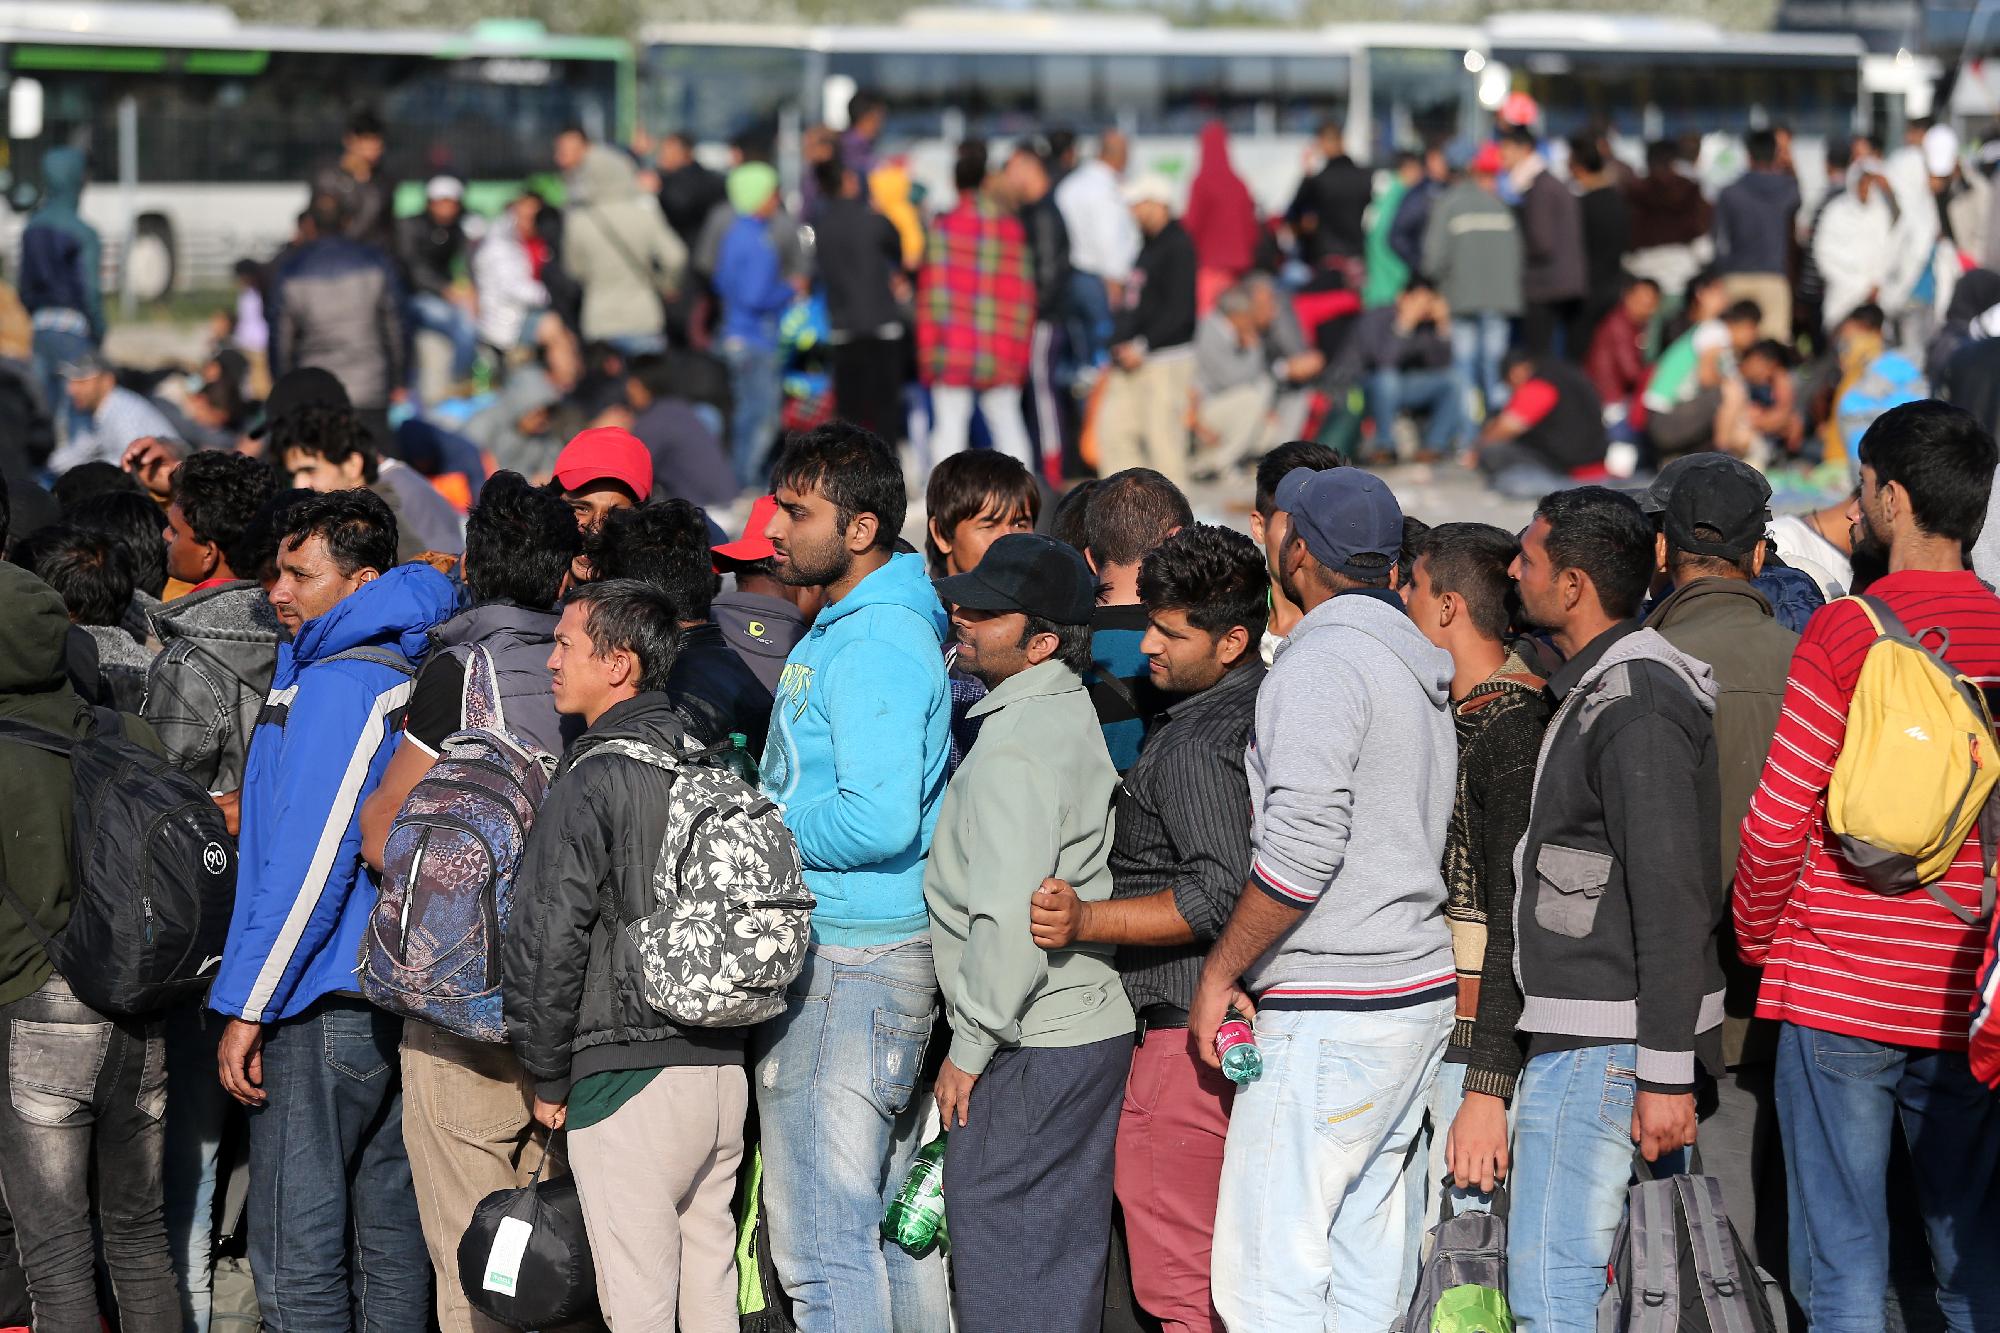 Hetven város fog össze a tömeges migráció kezeléséért